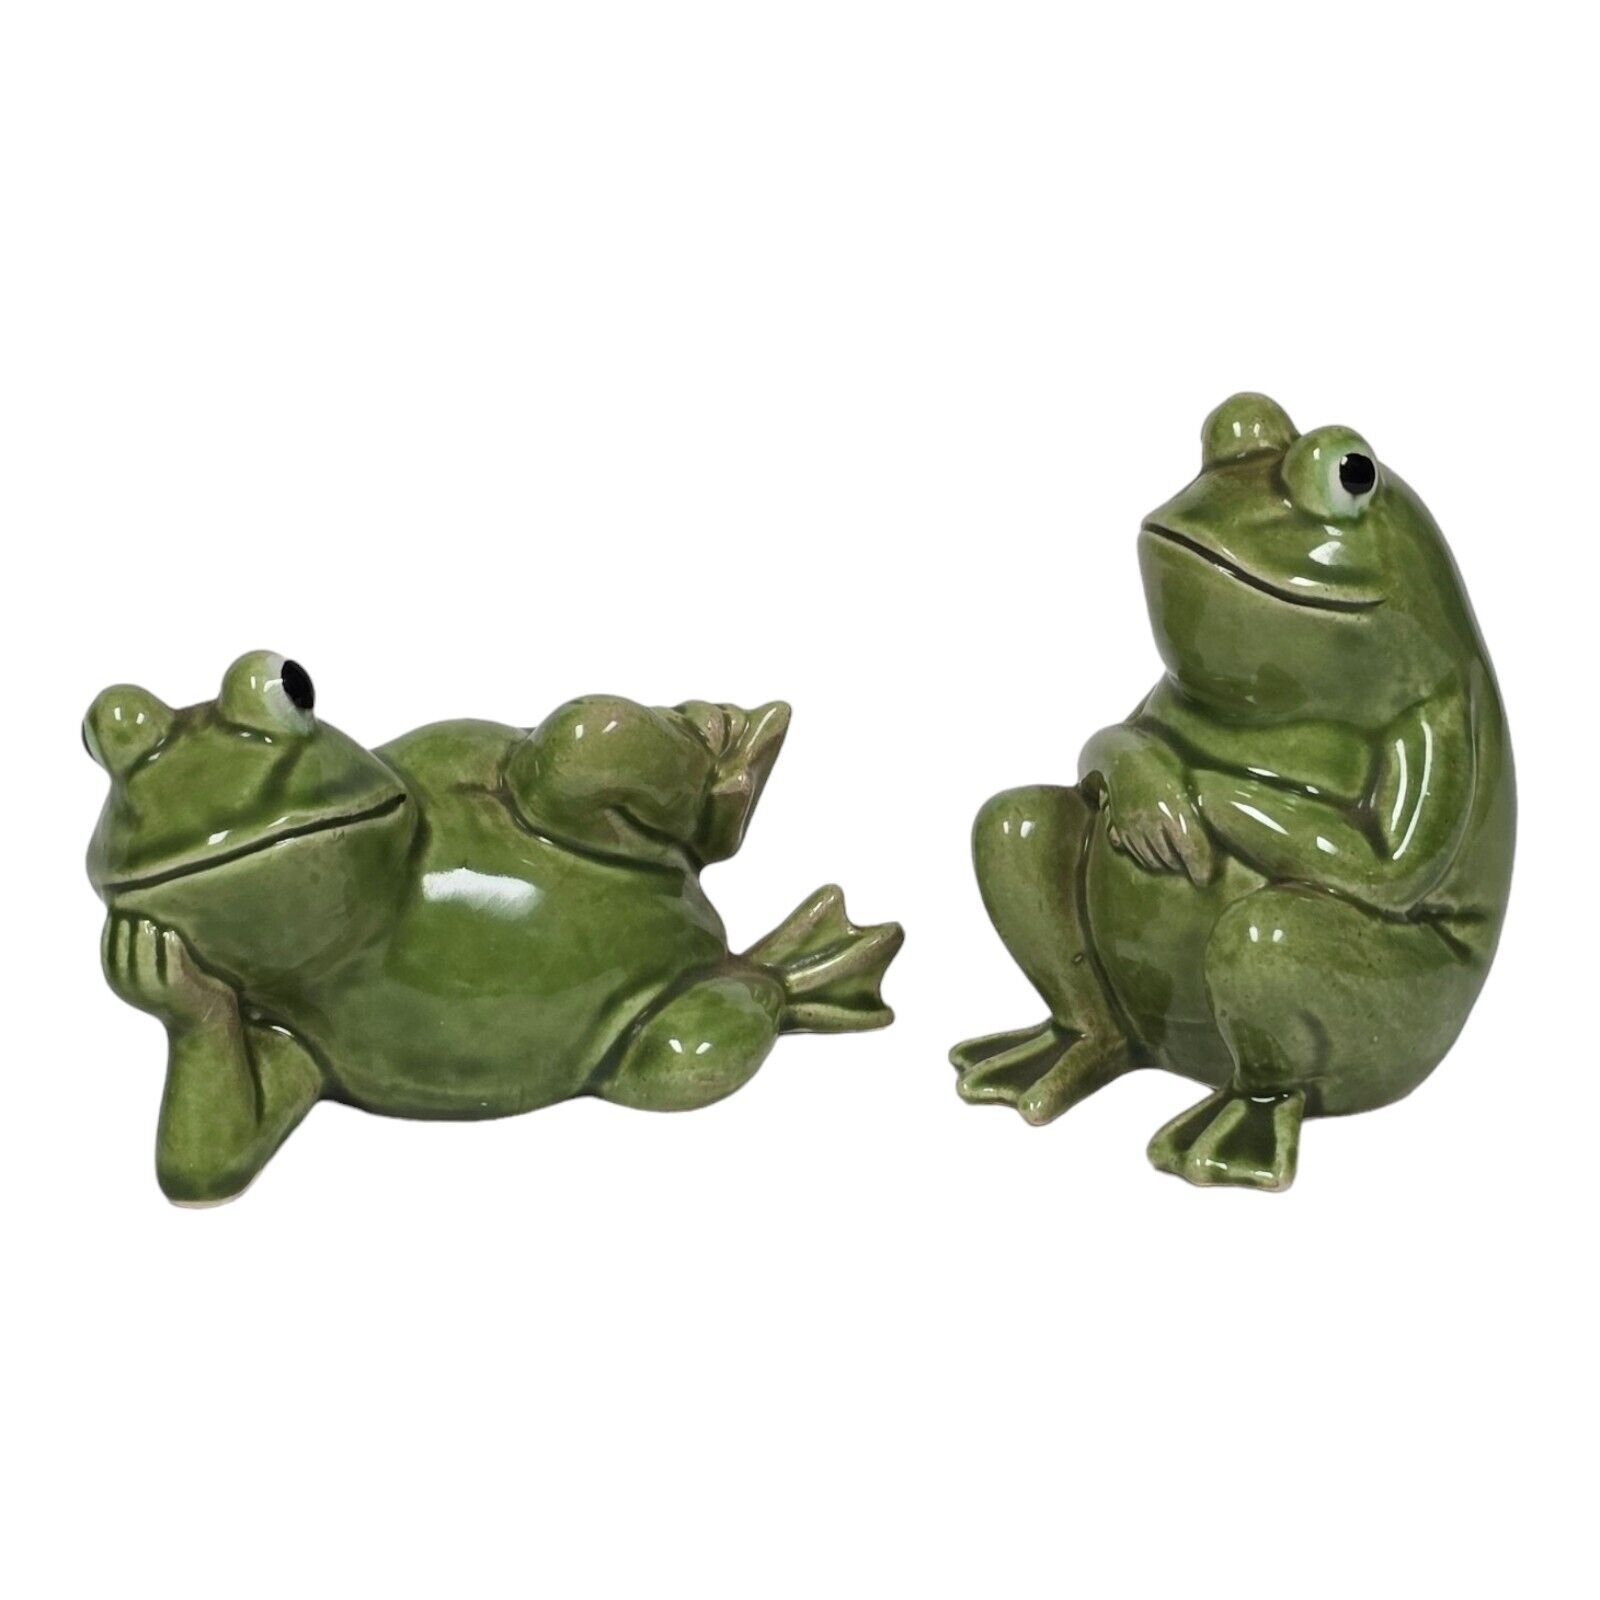 Vtg Norcrest Ceramic Anthropomorphic Chilling Frogs Salt & Pepper Shakers Japan